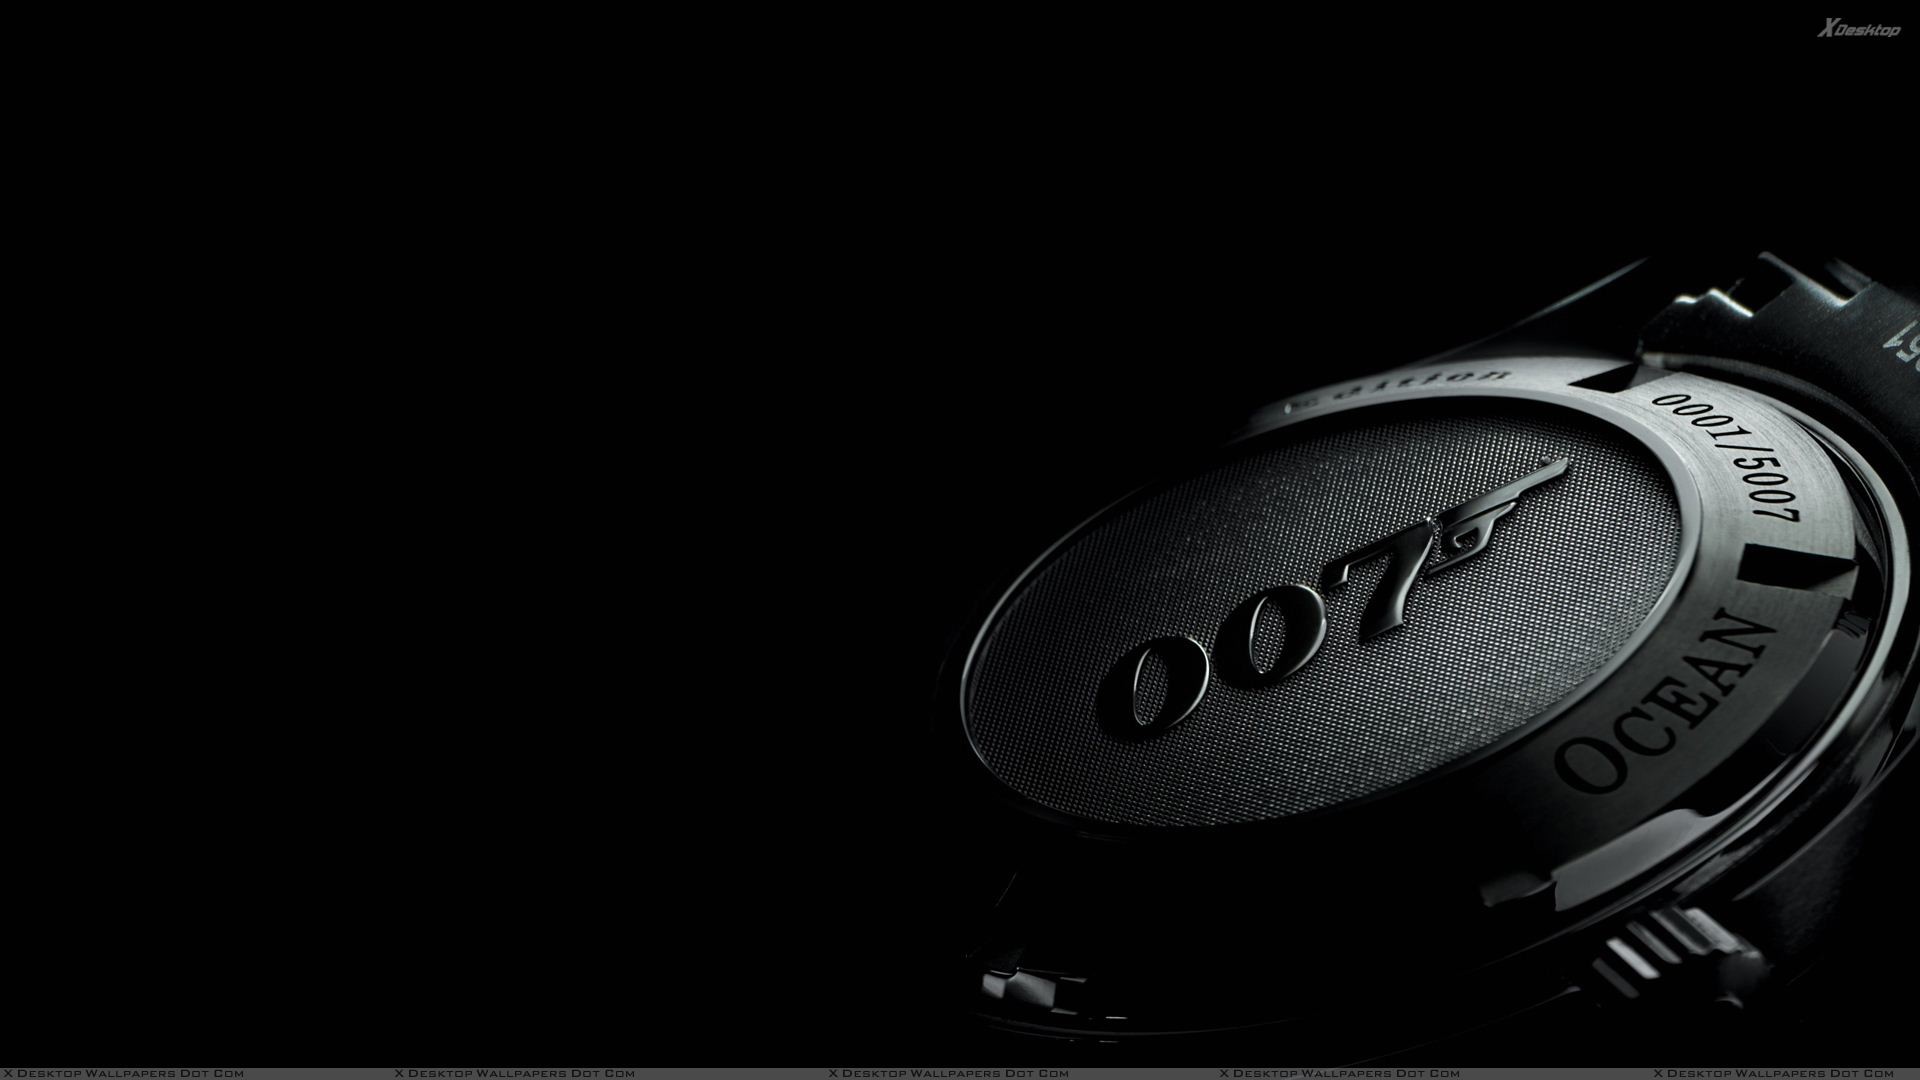 Hình nền 007: Được thiết kế với sự phô diễn tài năng và trí tưởng tượng tuyệt vời, hình nền 007 này sẽ khiến bạn say mê ngay từ cái nhìn đầu tiên. Hãy cùng chiêm ngưỡng và sử dụng để tôn lên phong cách của bạn.